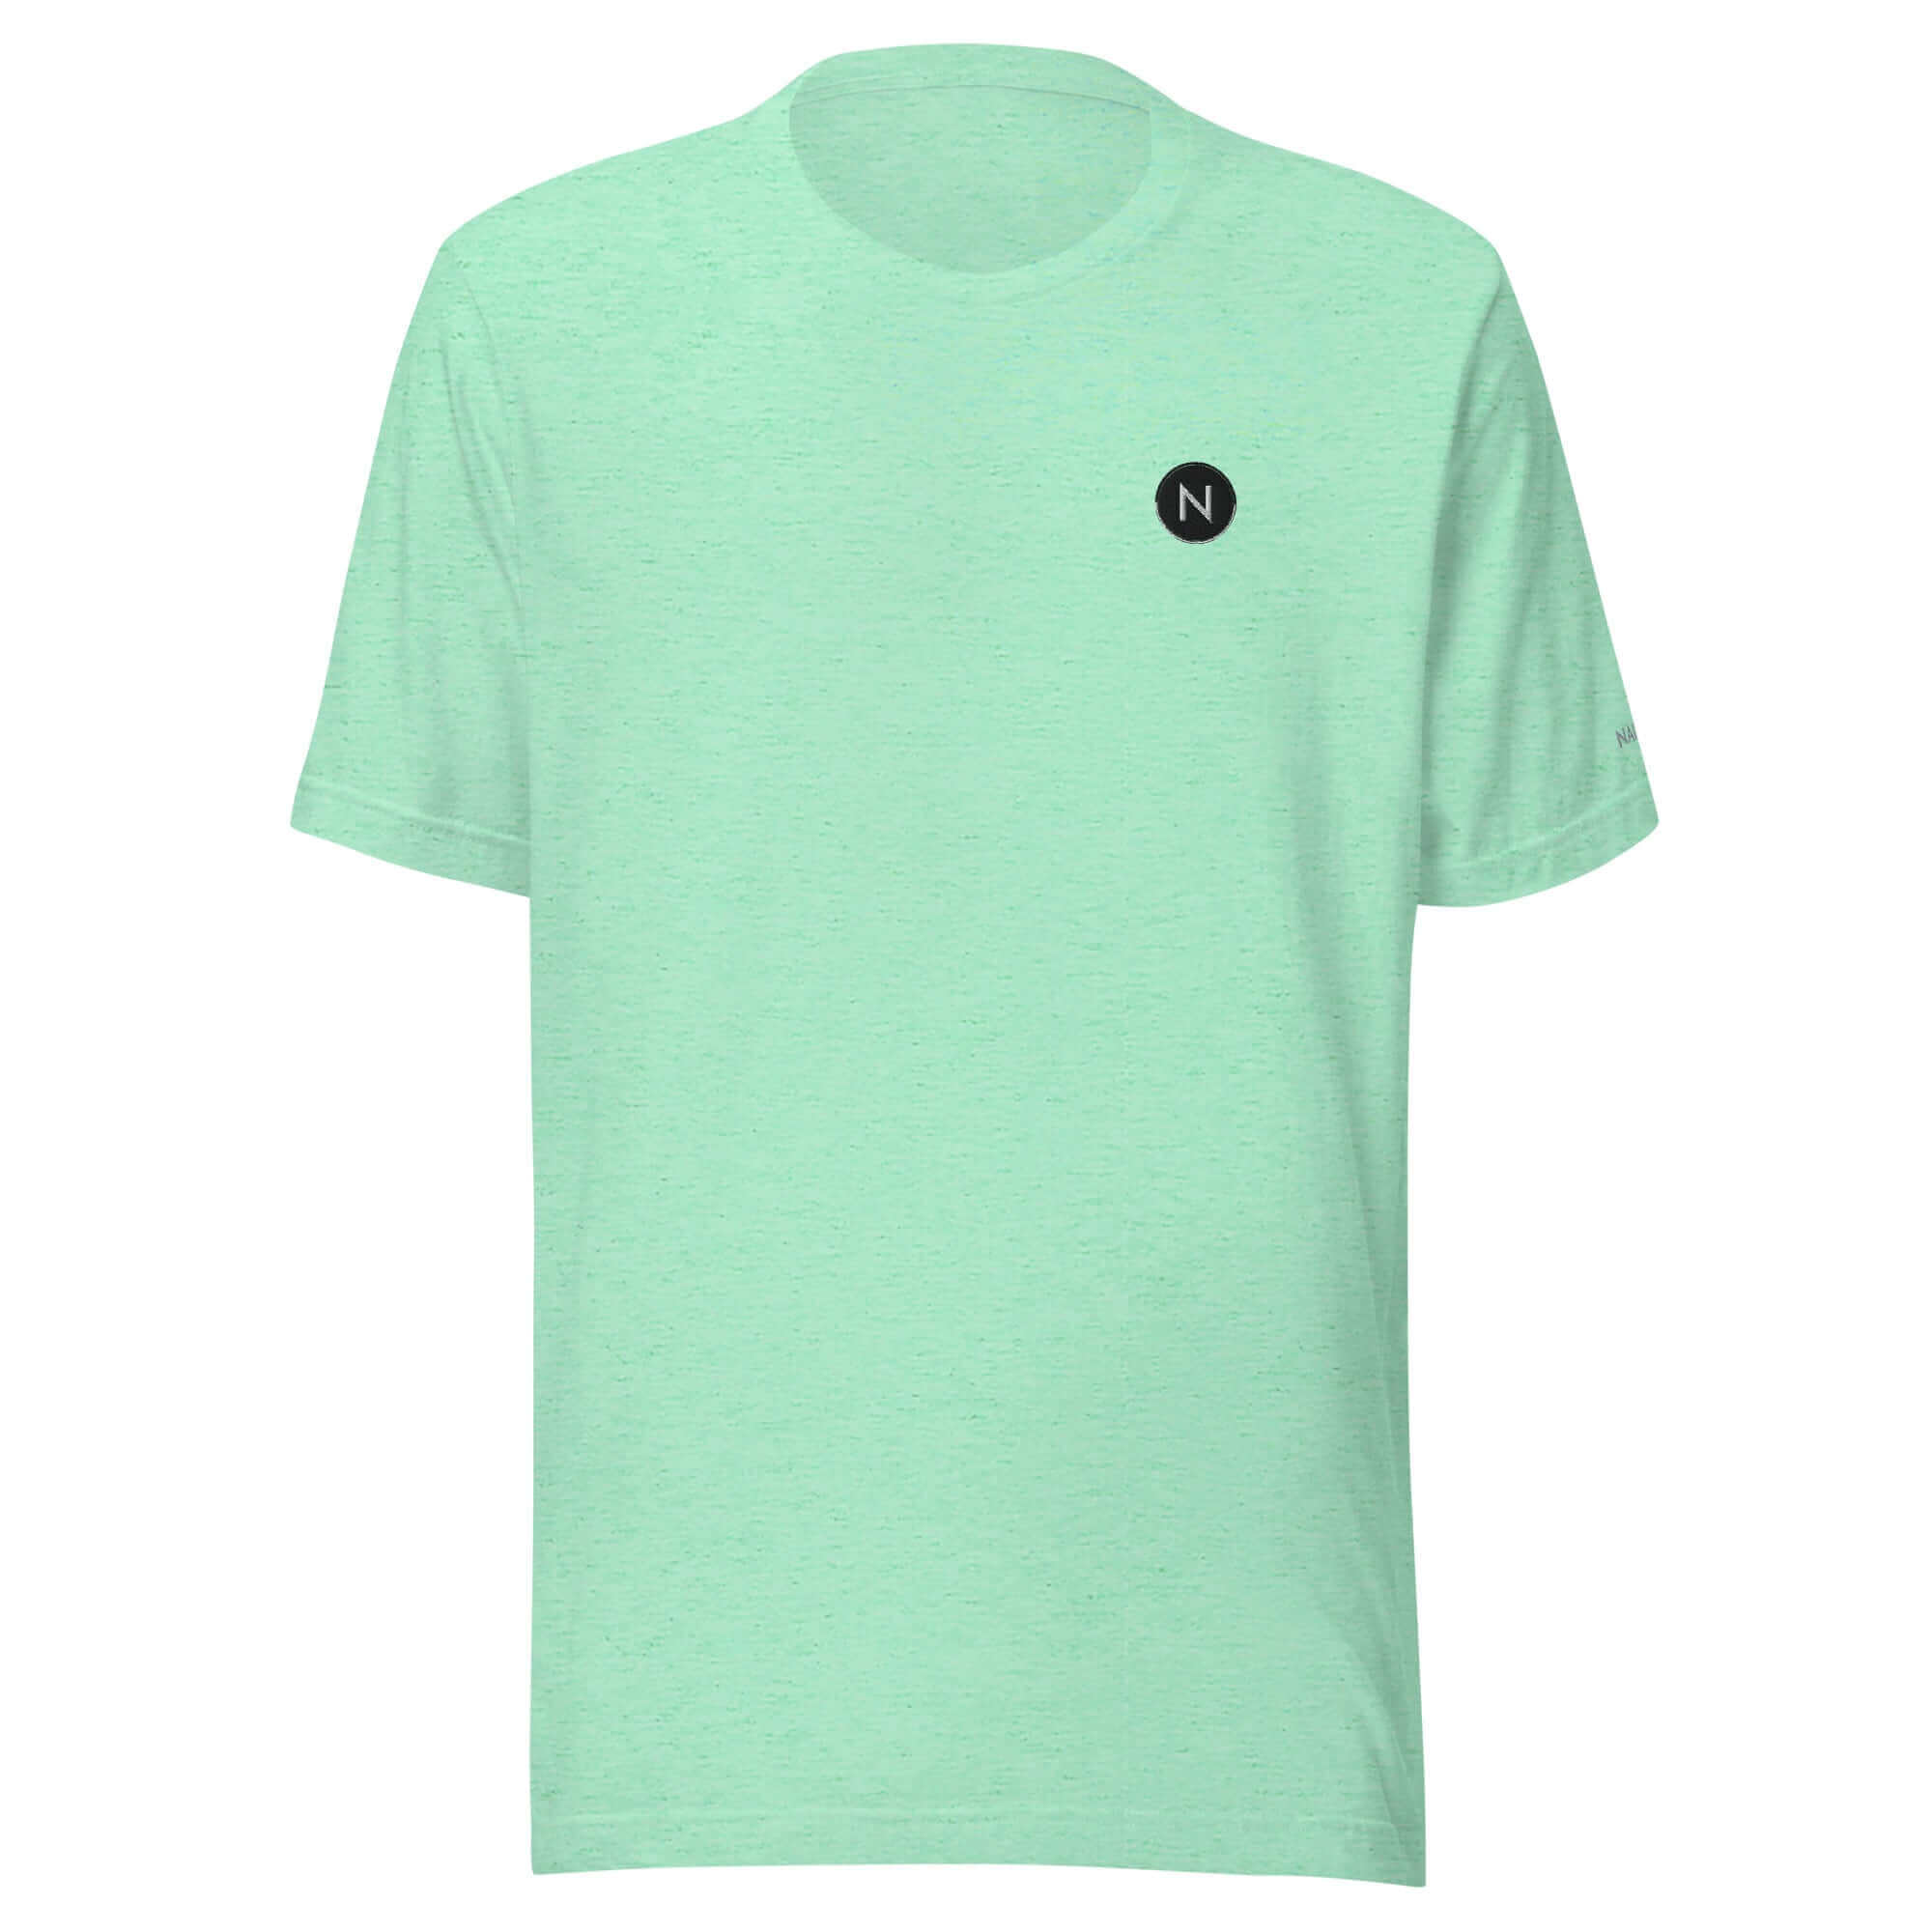 NAILINO Unisex-T-Shirt Farbe: Heather MinzeGröße: S